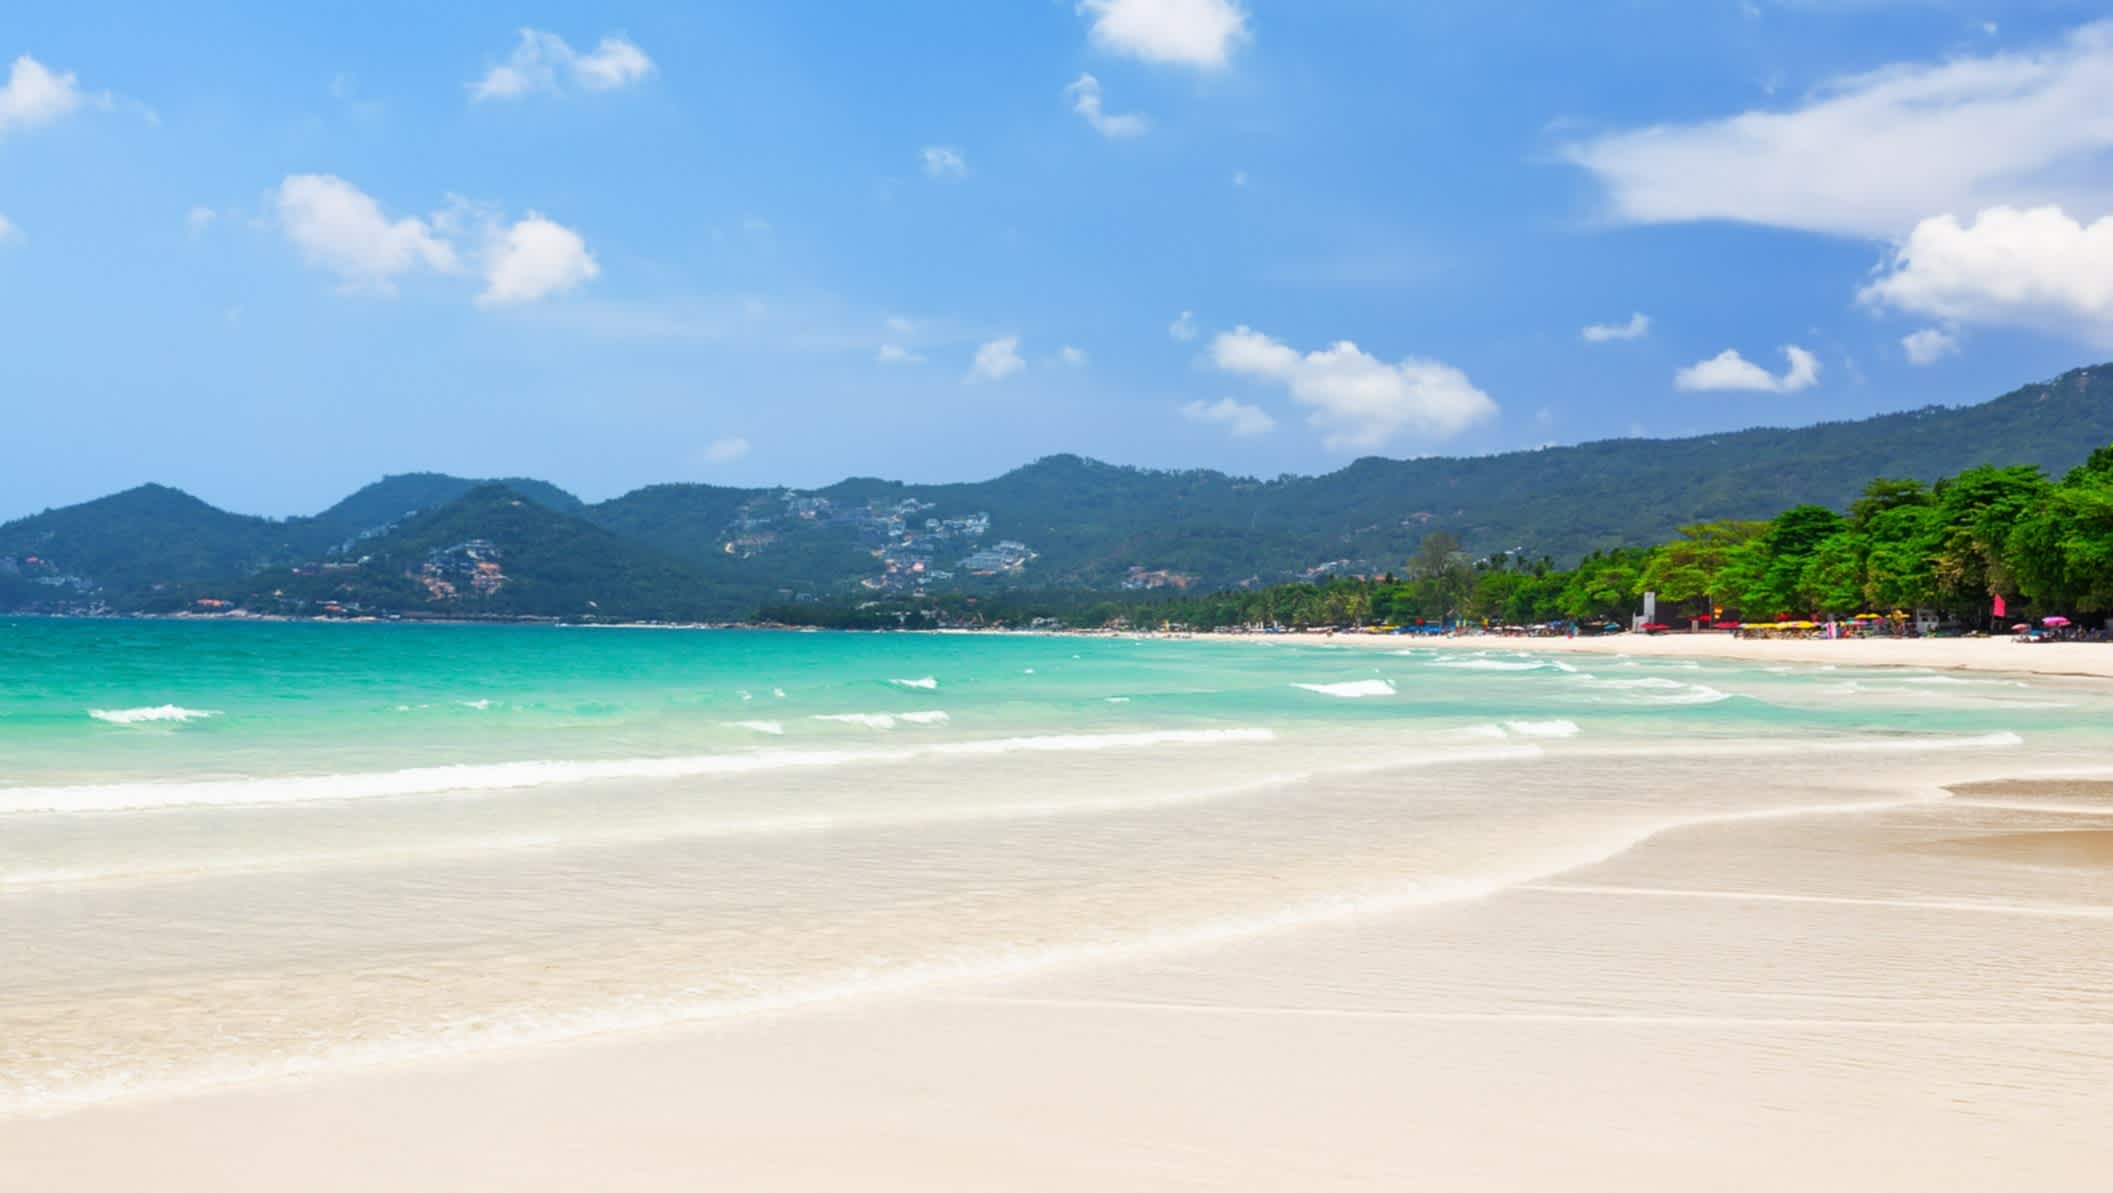 Blick auf den wunderschönen weißen Sandstrand mit türkisfarbenem Wasser des Chaweng Strandes in Koh Samui, Thailand.